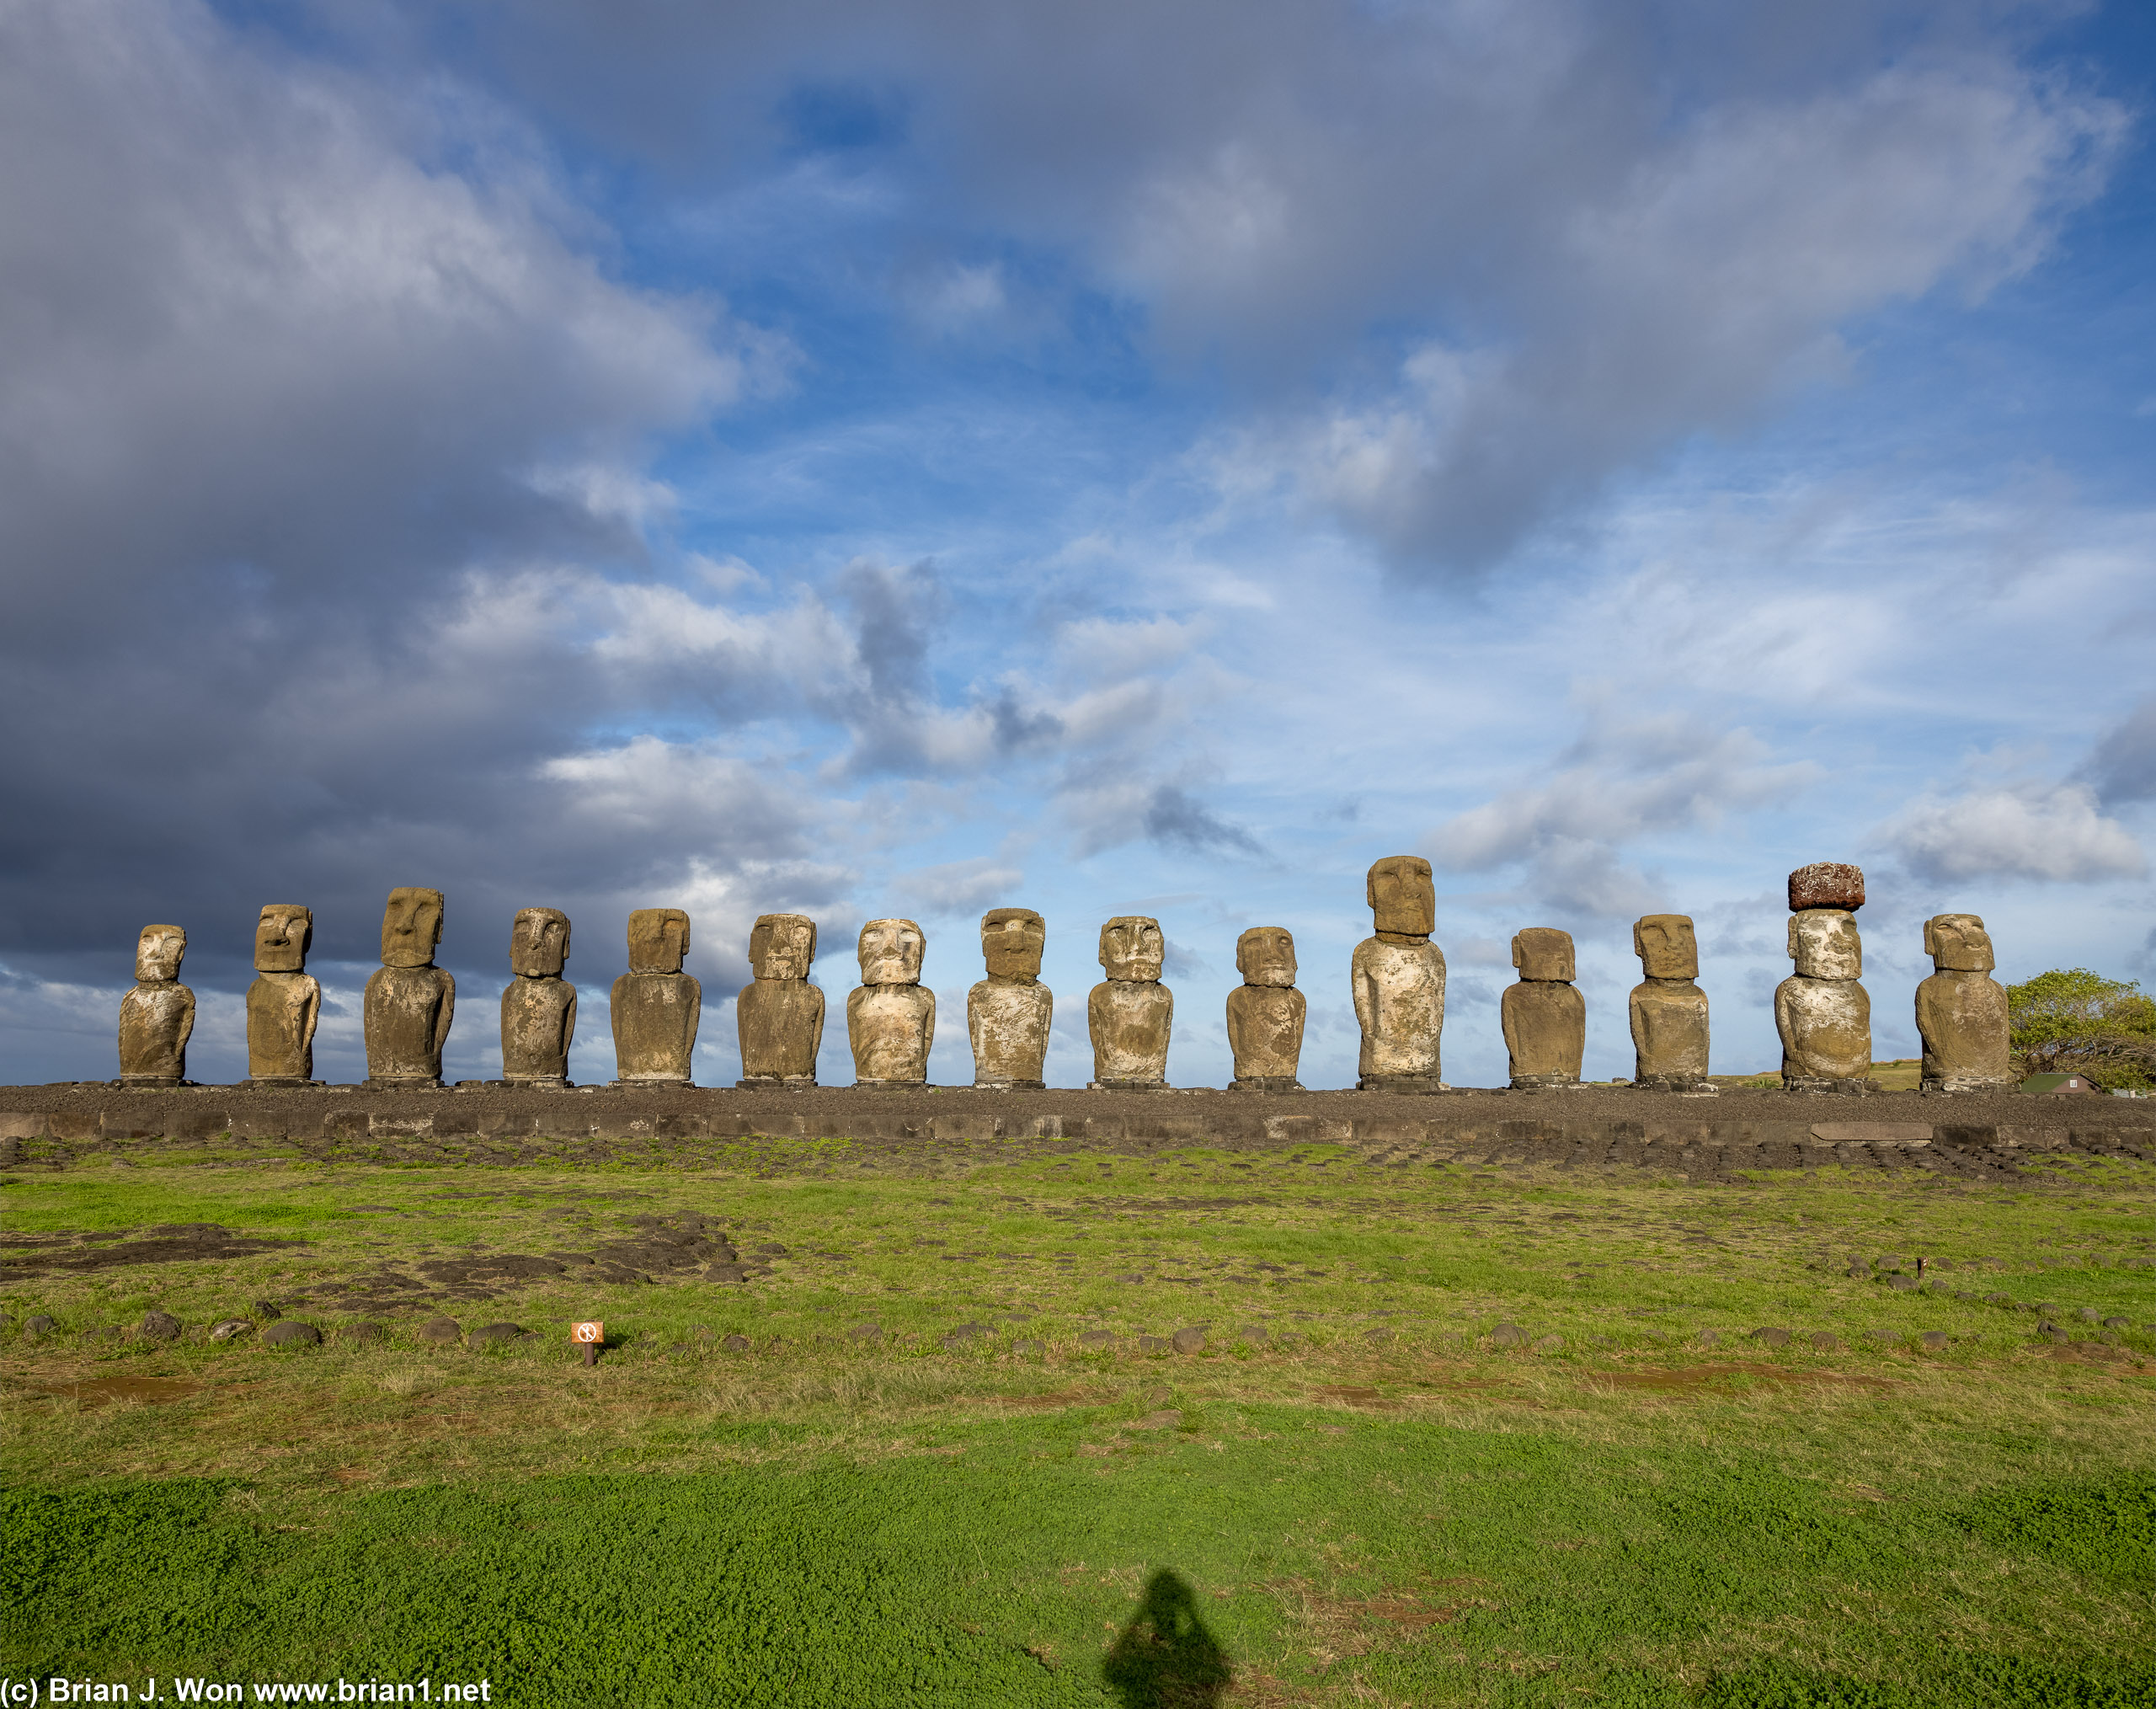 15 moai at the restored Ahu Tongariki.